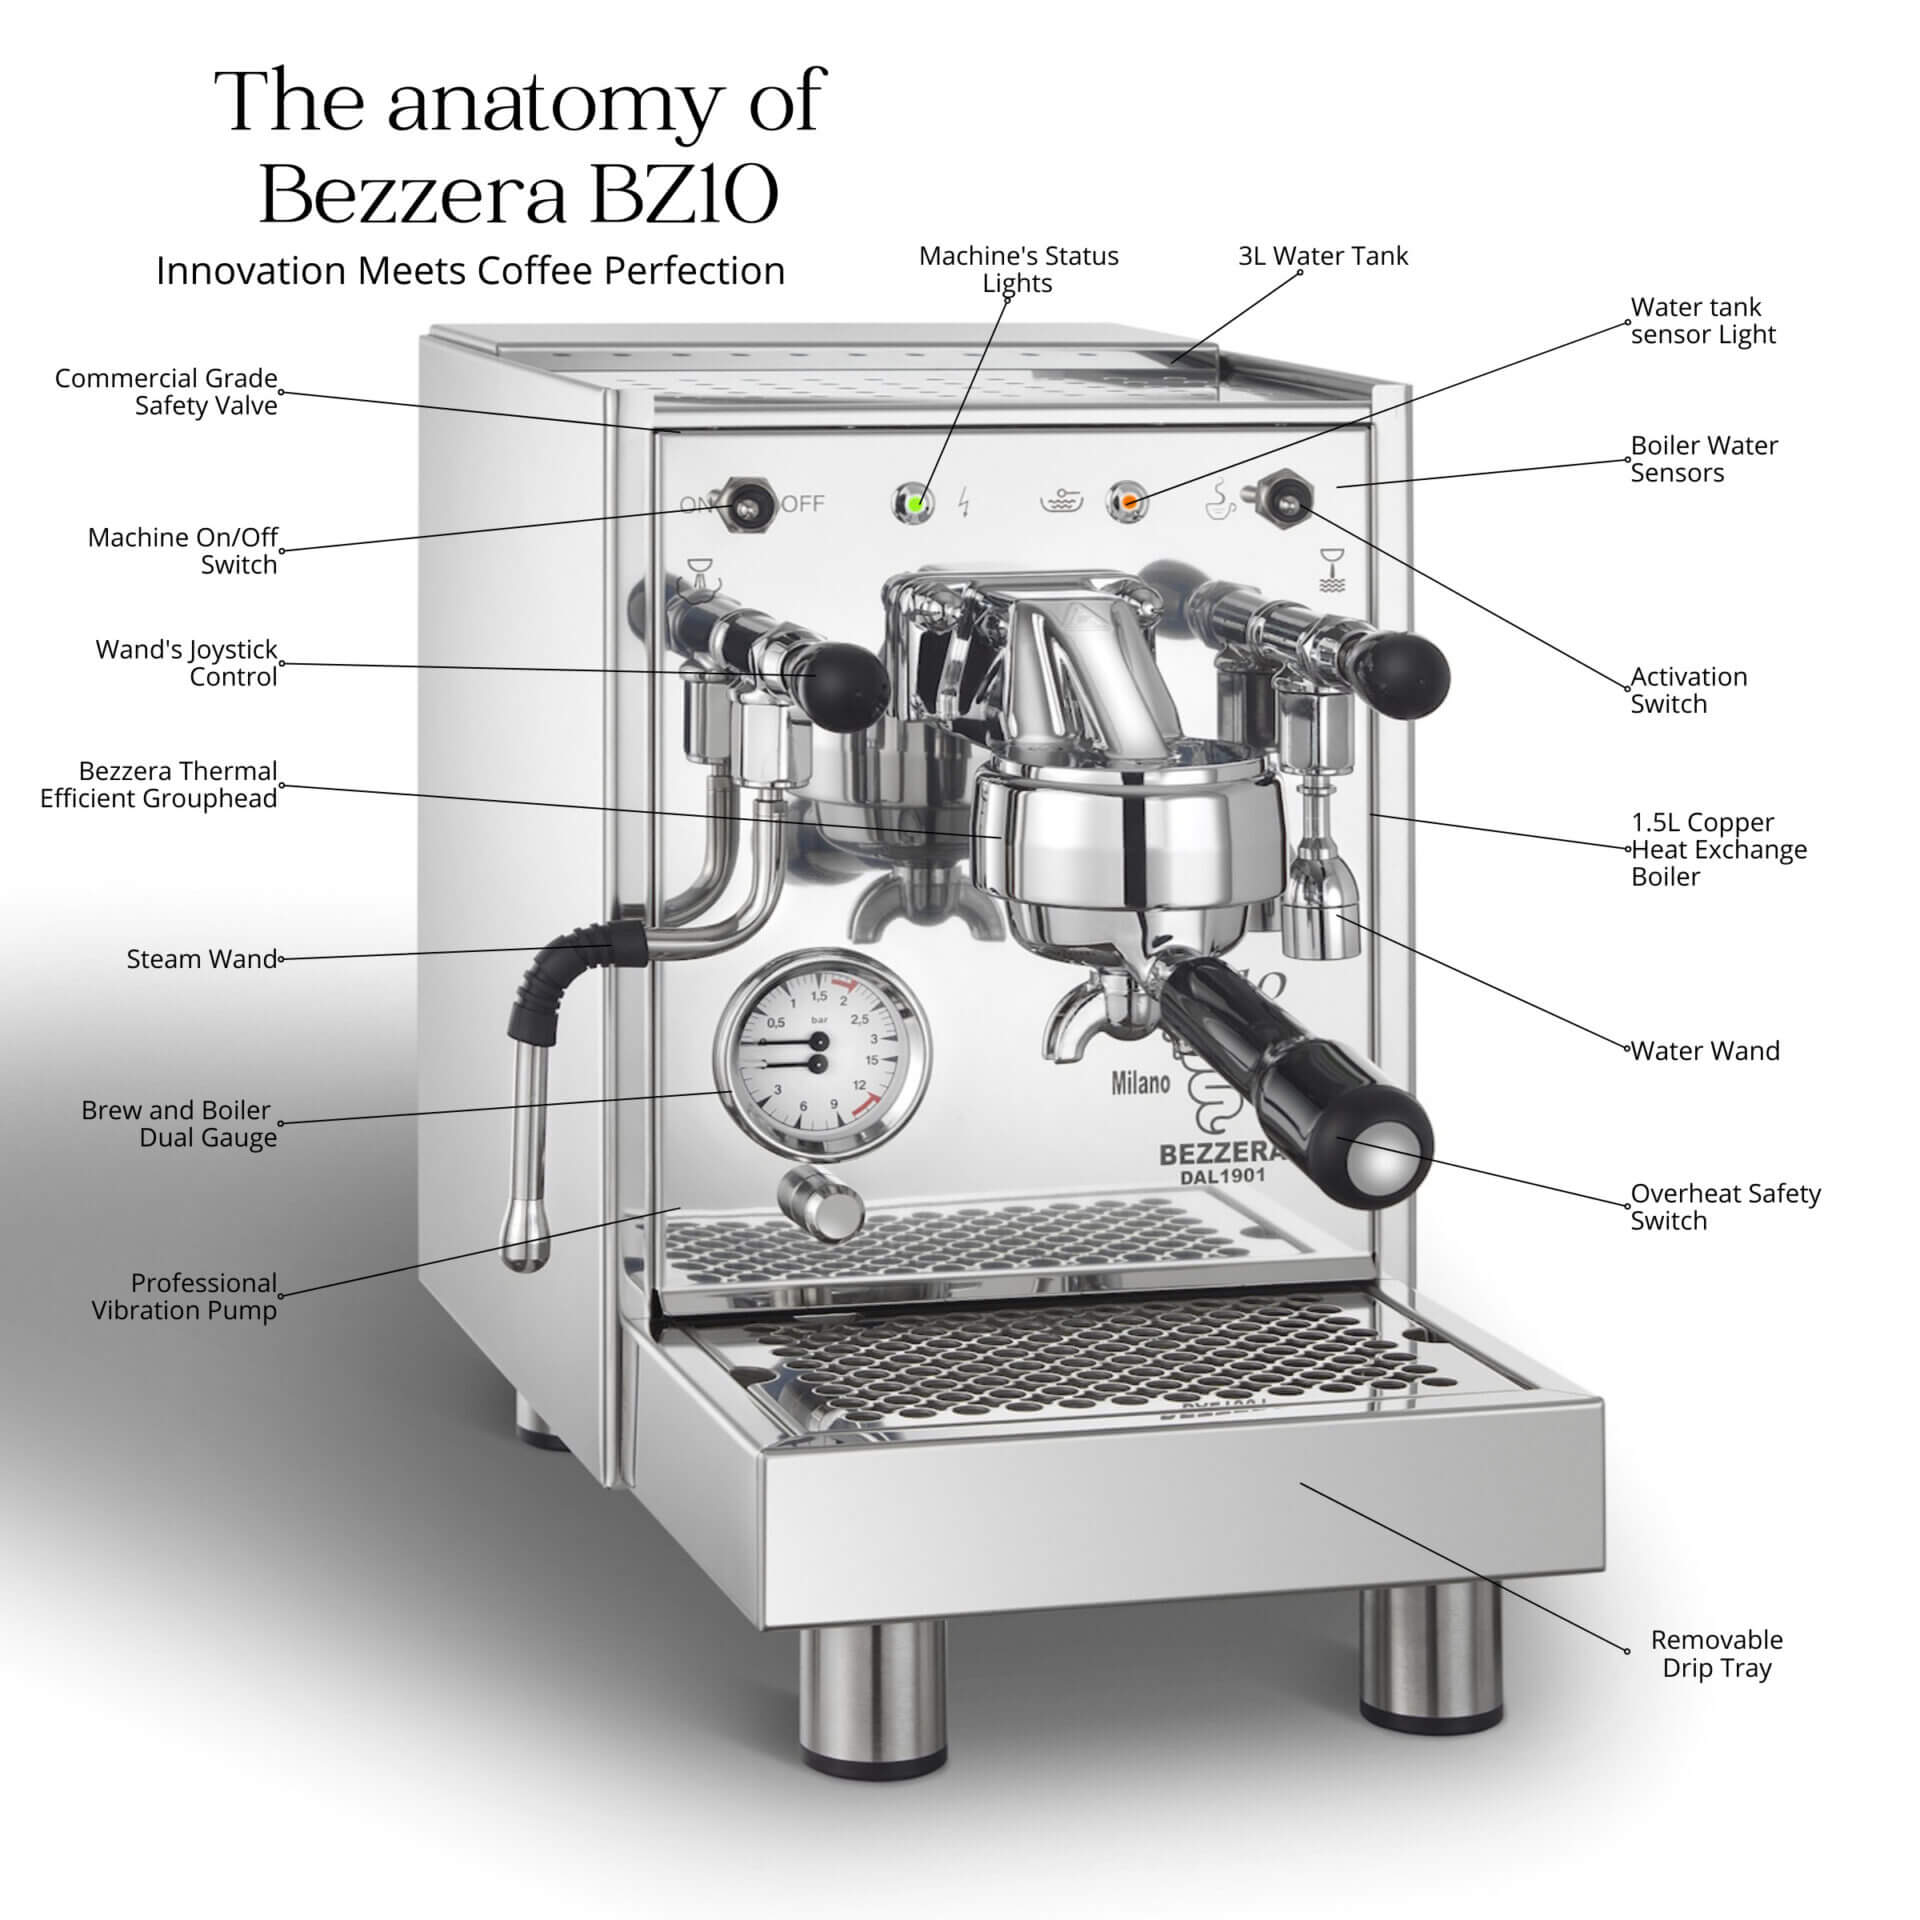 Bezzera BZ10 Anatomy Espresso Machine